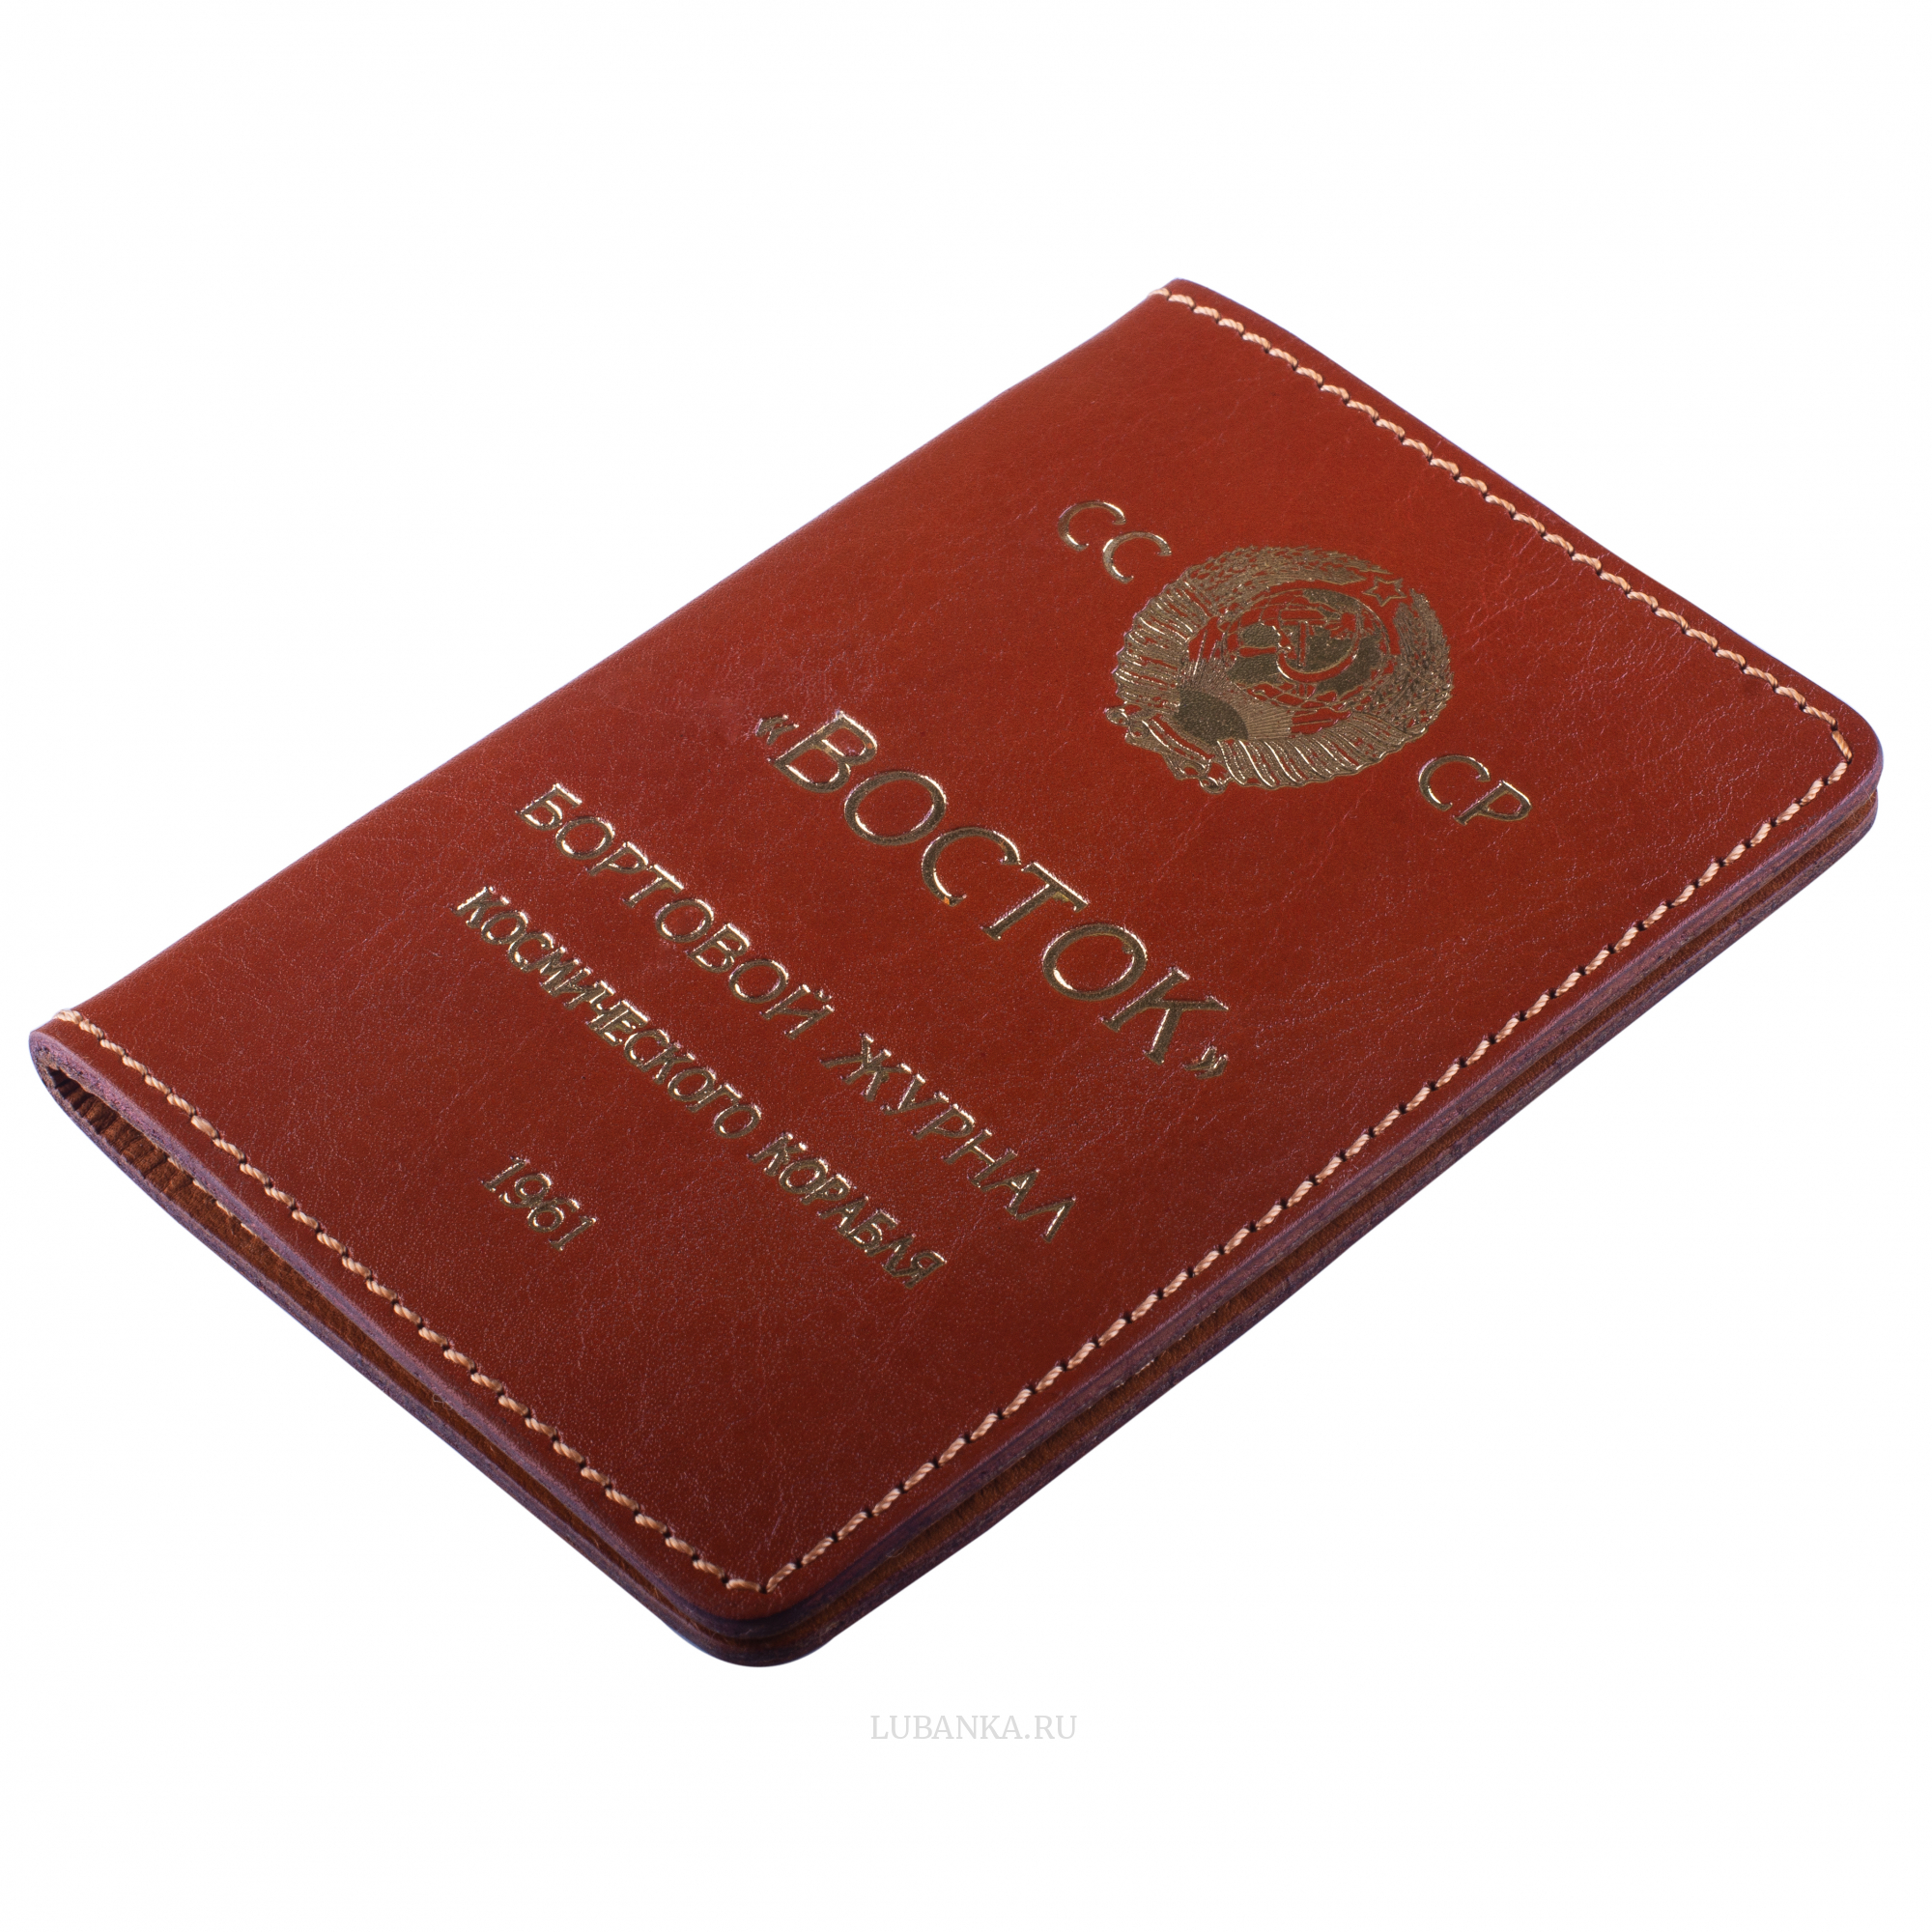 Обложка для паспорта Восток коричневая